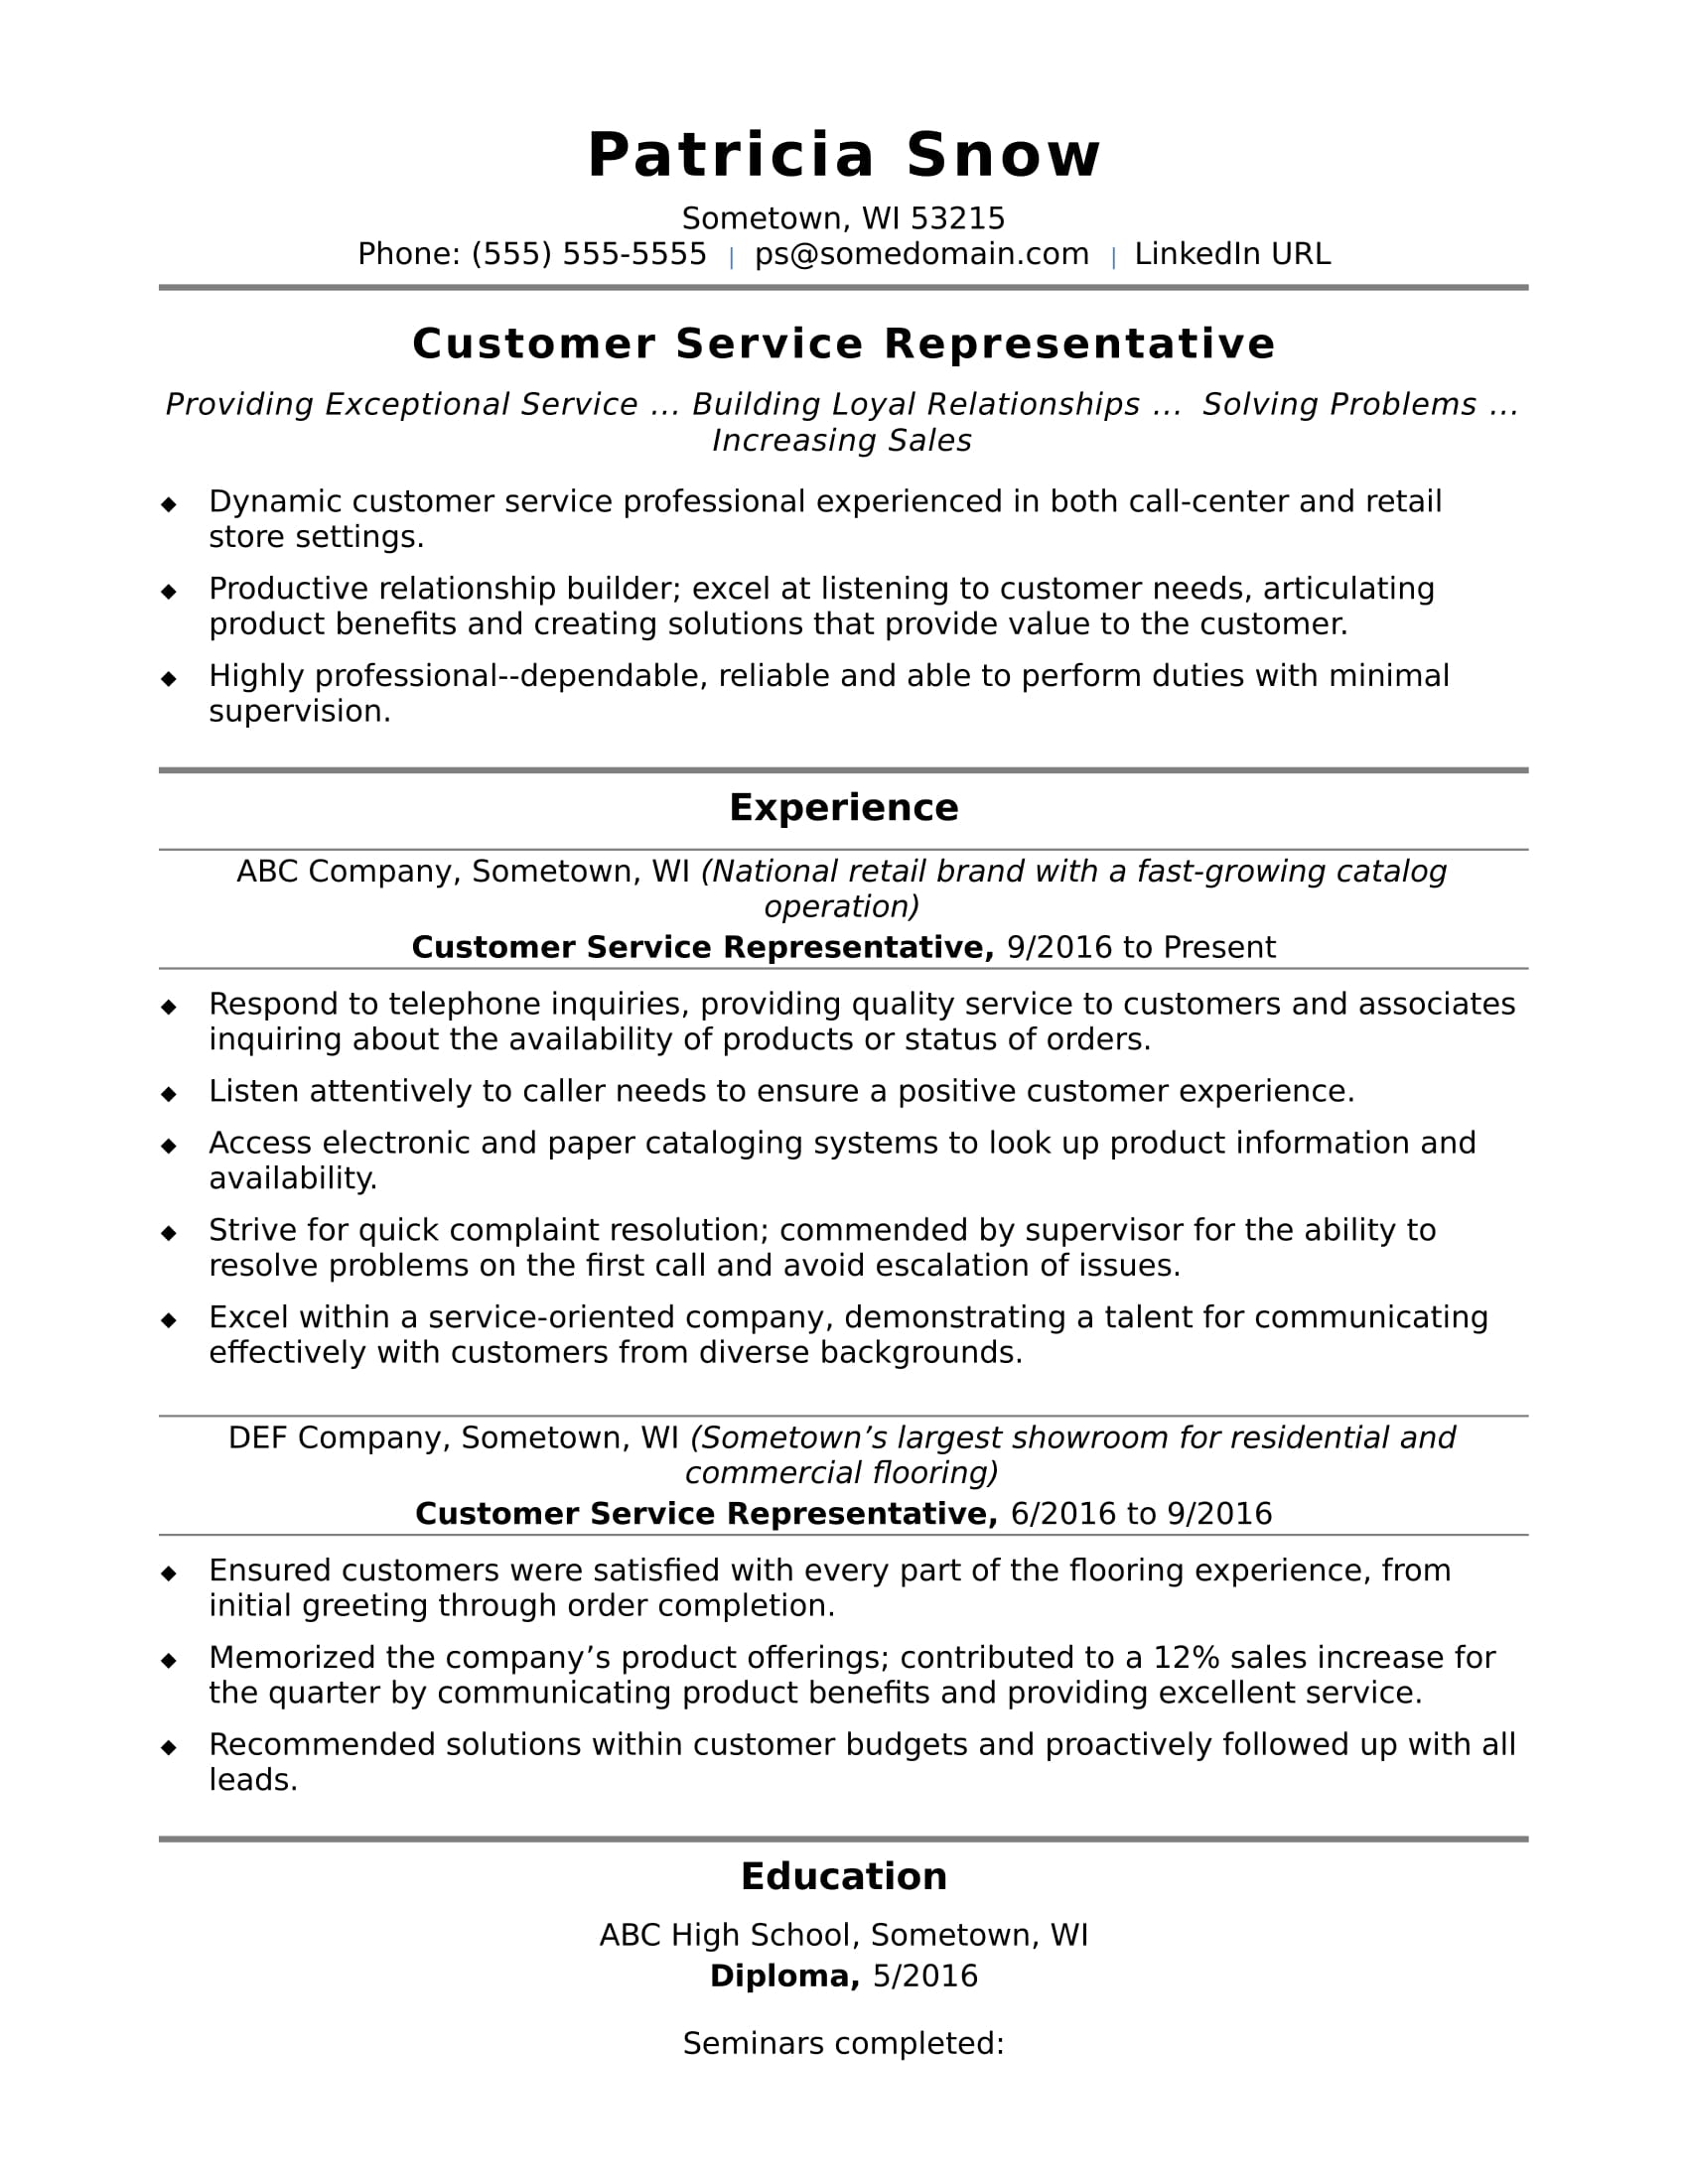 Customer Service Resume Skills Customer Service Representative Entry Level customer service resume skills|wikiresume.com